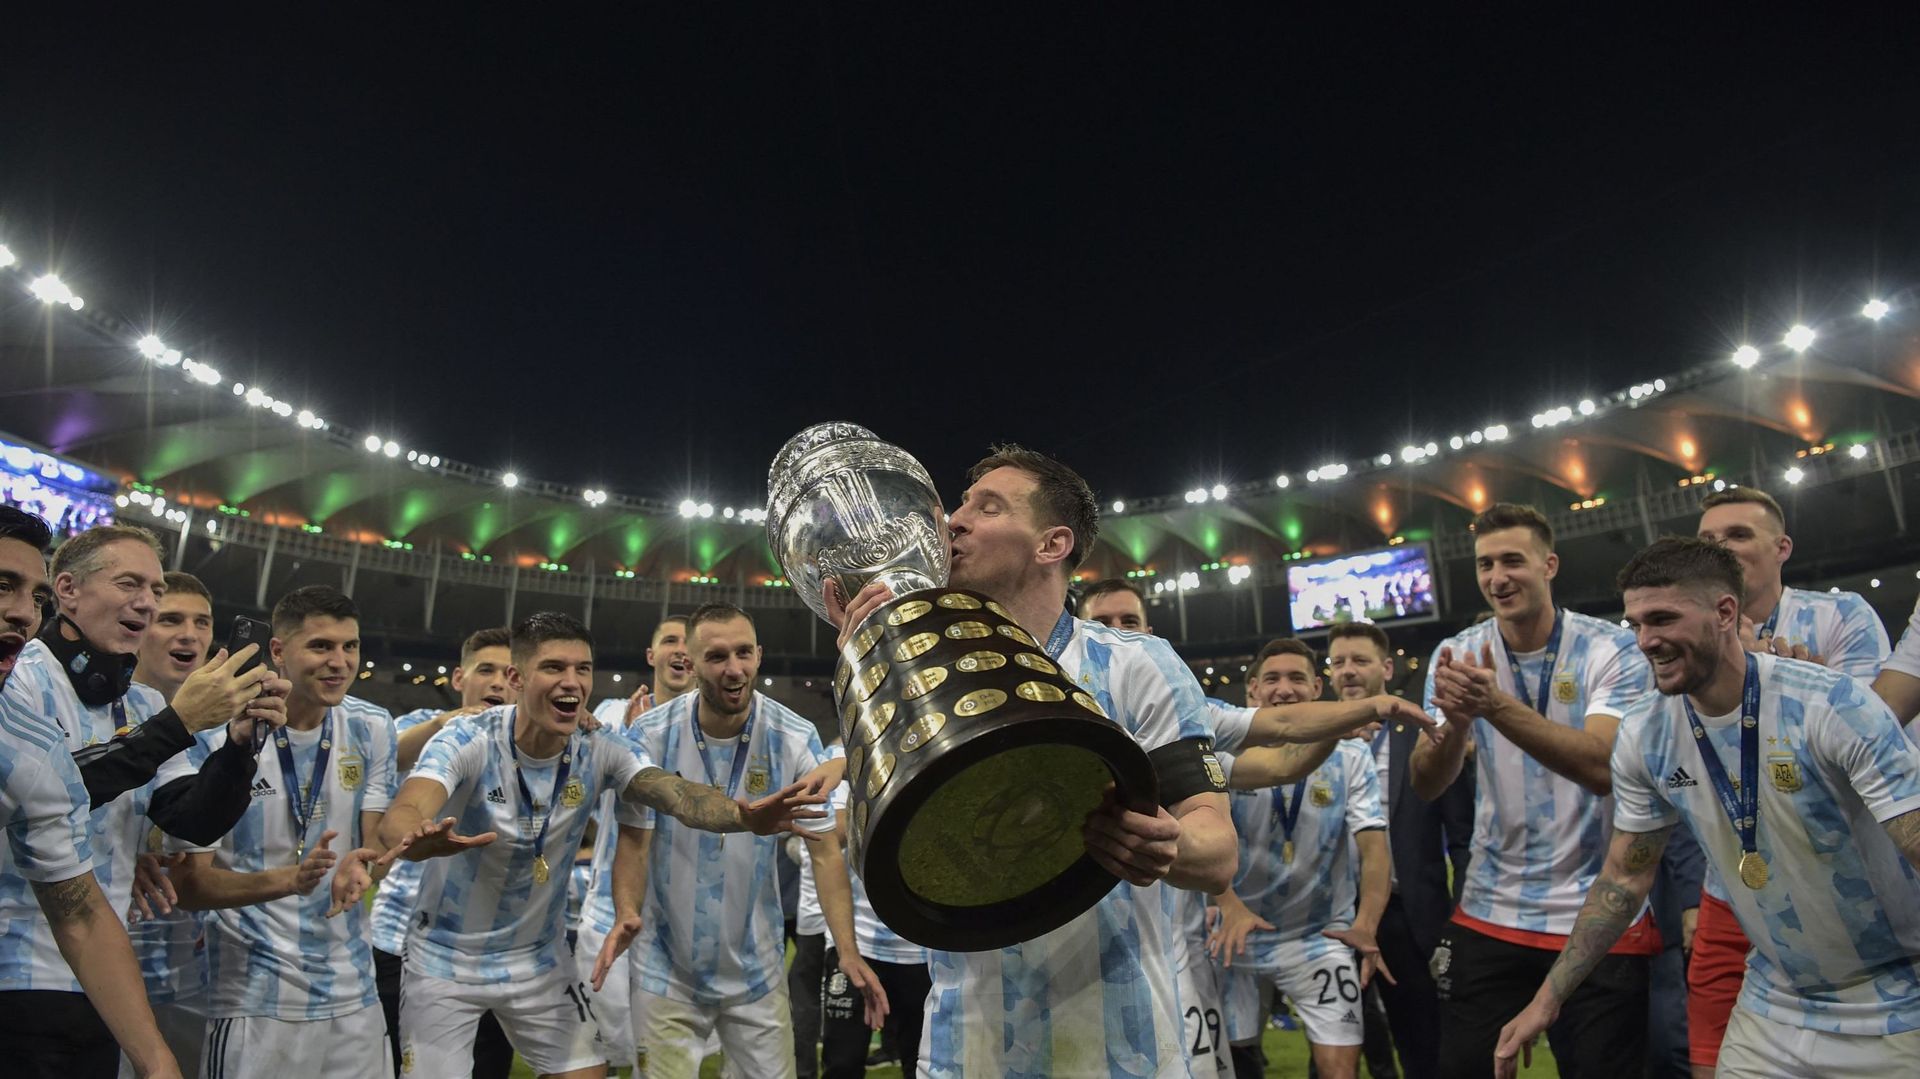 Coupe de tonnerre au Maracana! Lionel Messi a enfin remporté son premier titre avec l'Argentine en domptant le Brésil de Neymar en finale de la Copa America (1-0), mettant fin à une disette de 28 ans de son pays.